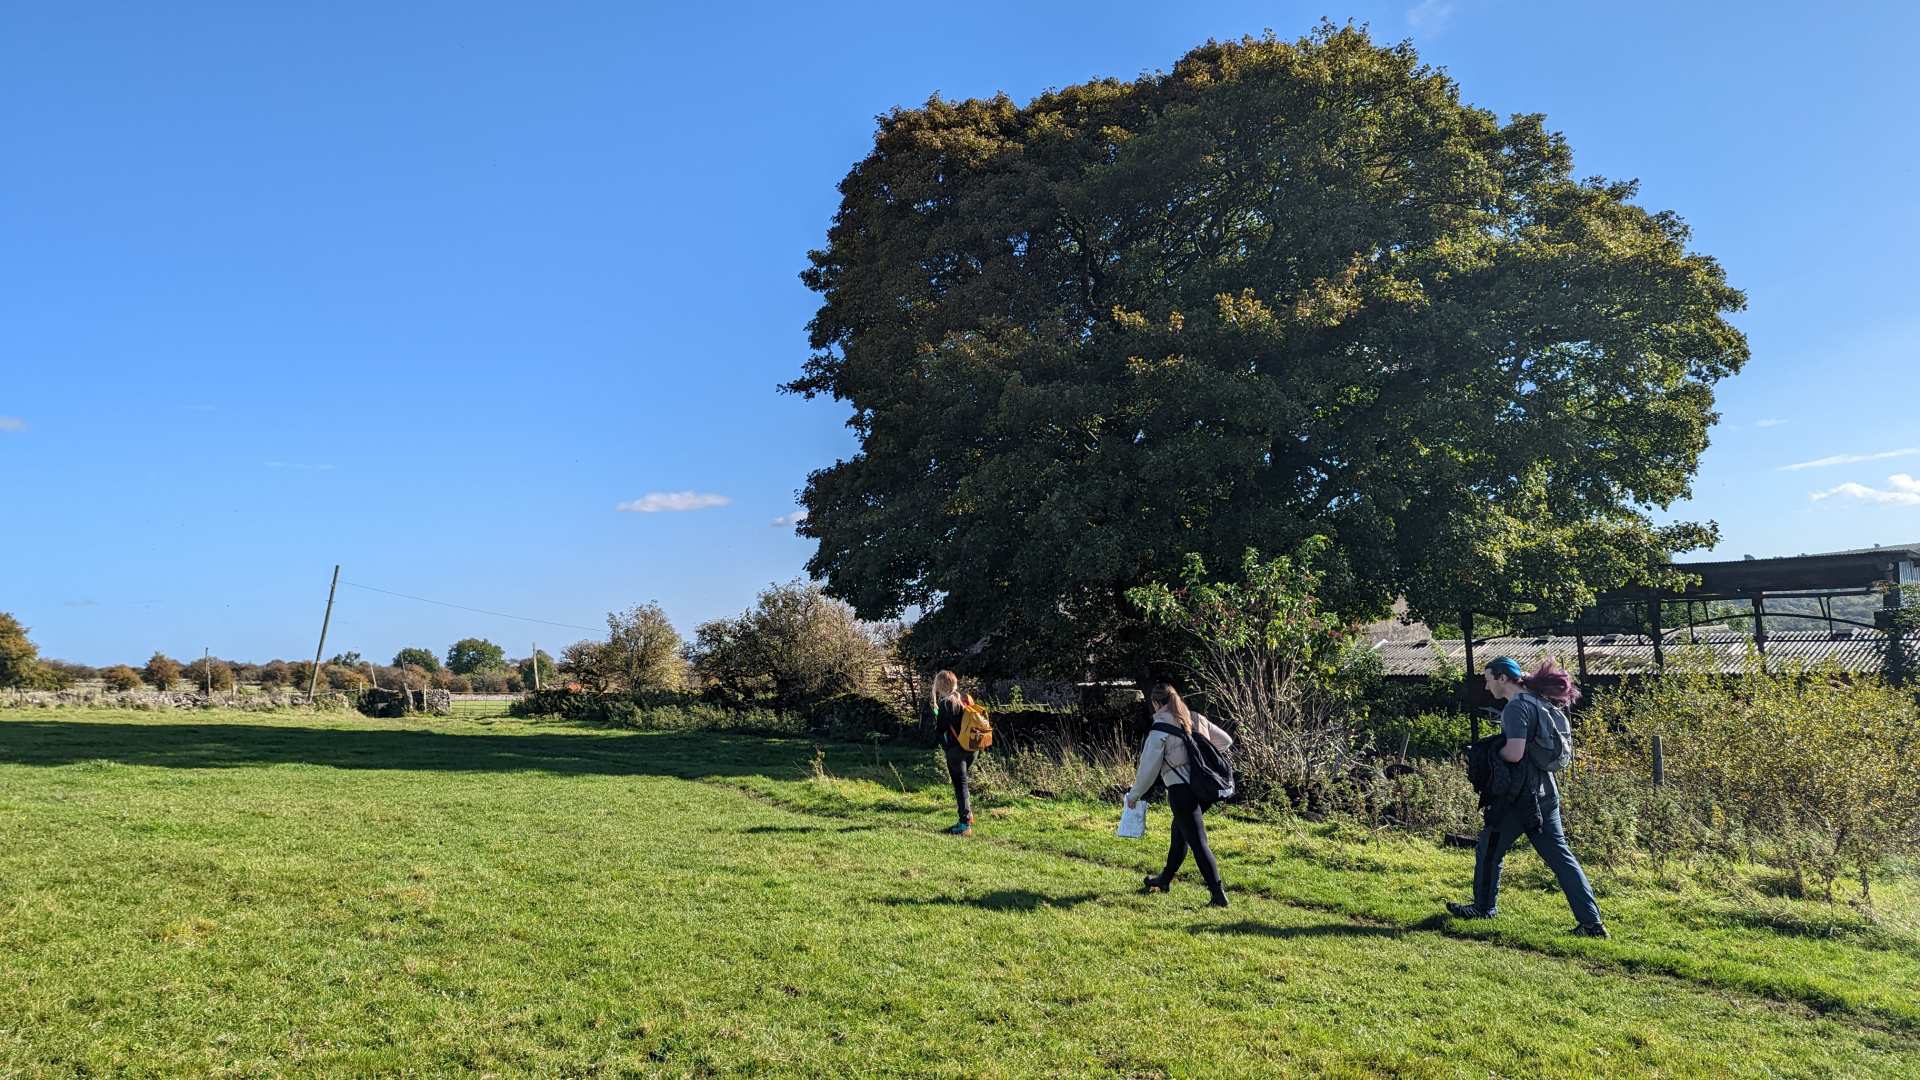 The Contours team trek in stunning sunlight across a green field.